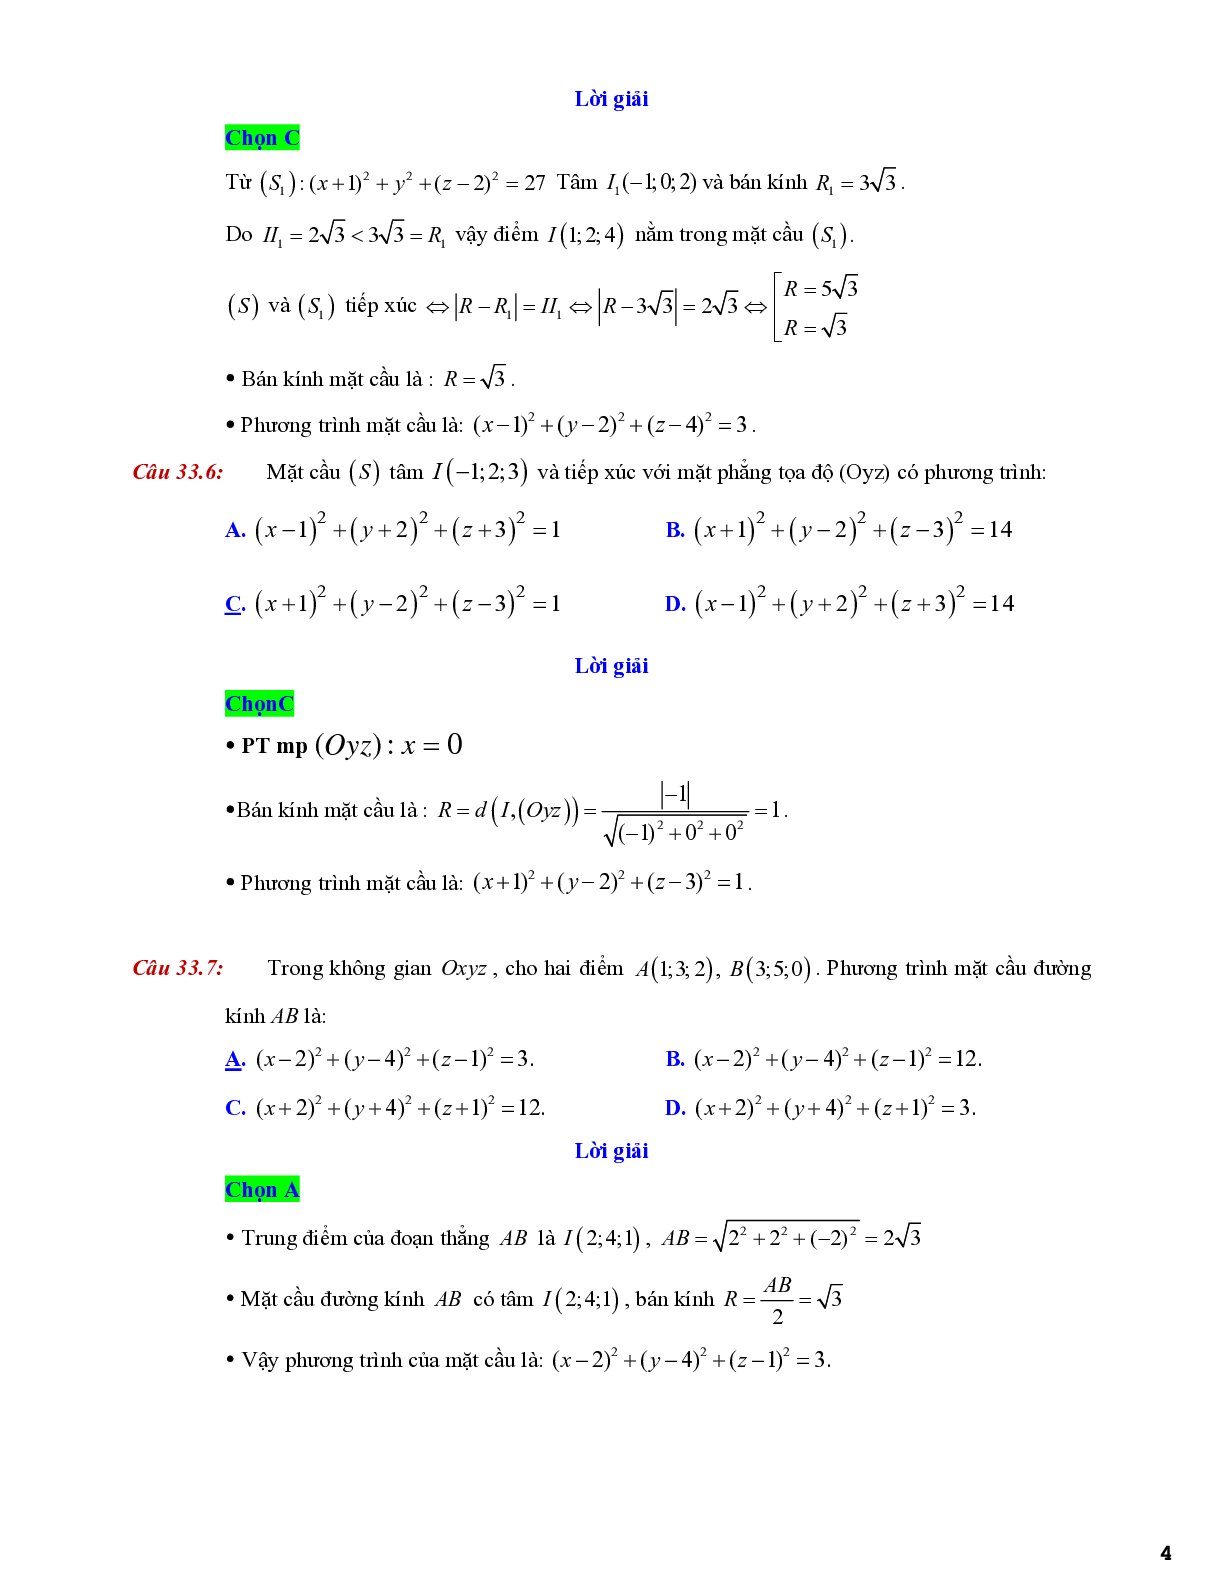 Lý thuyết và bài tập về viết phương trình mặt cầu - có đáp án chi tiết (trang 4)